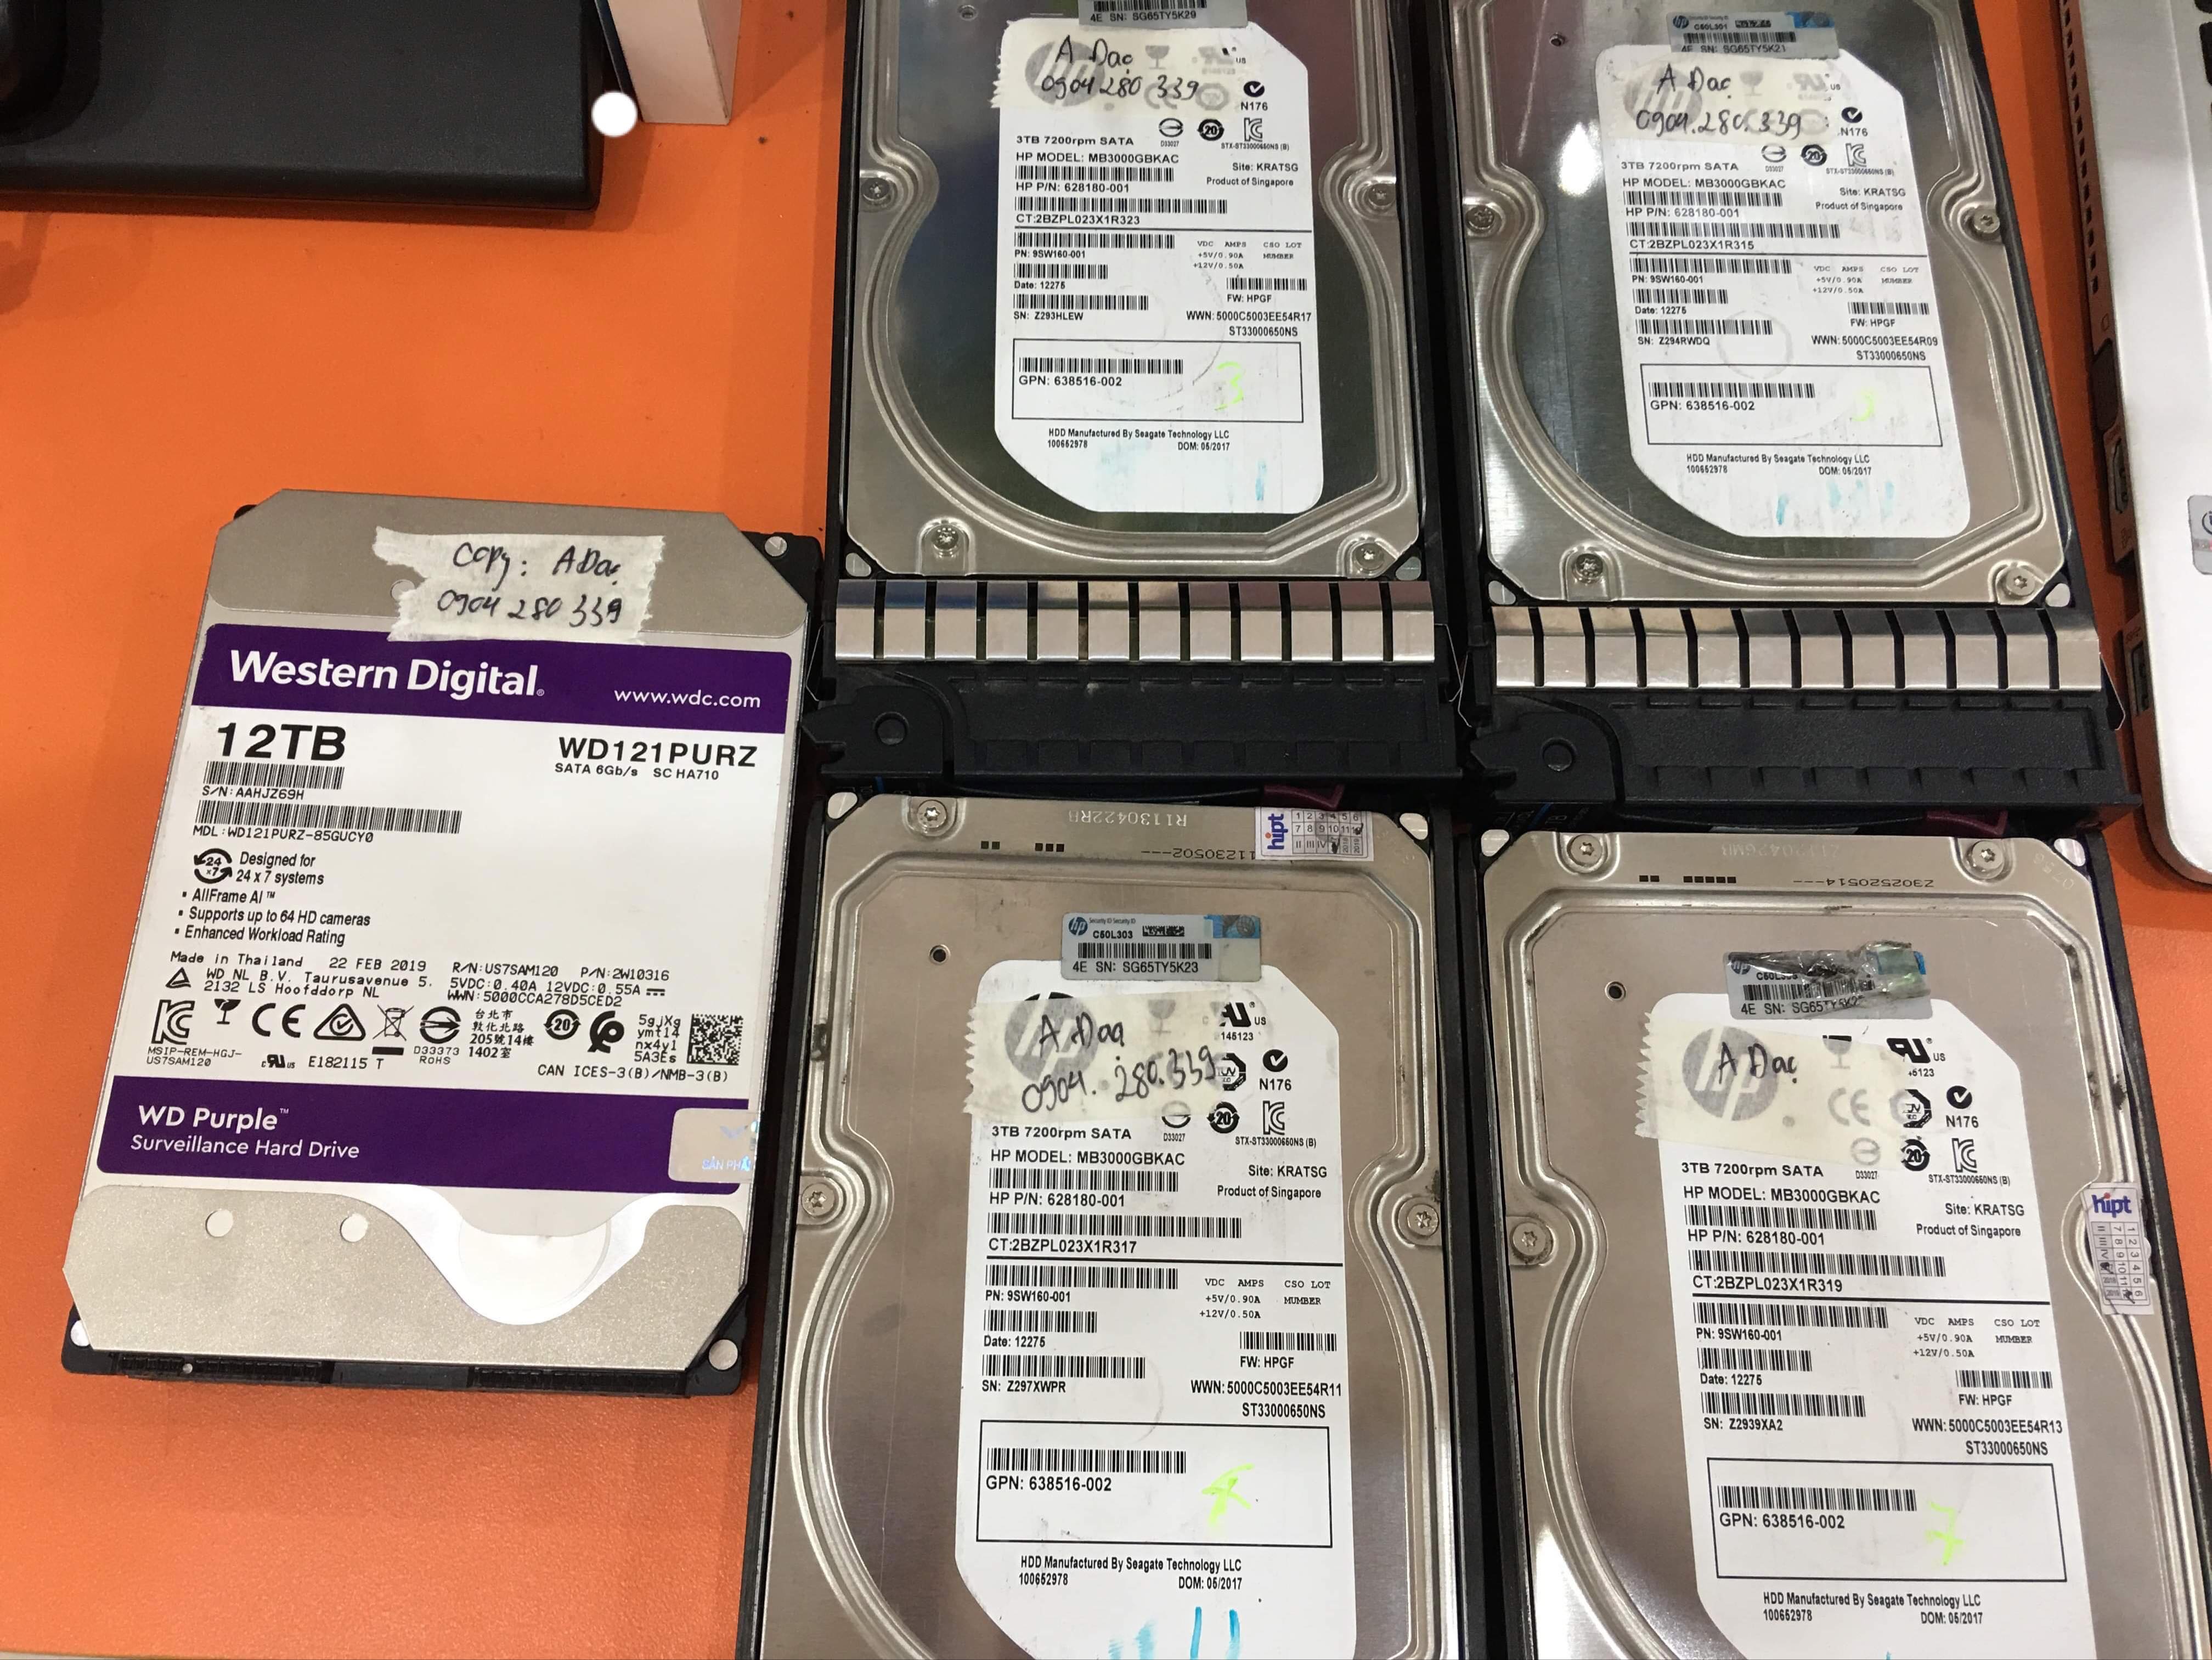 Khôi phục dữ liệu máy chủ HP với 4HDDx3TB sử dụng raid 5 lỗi vật lý 2 ổ cứng - 06.2019